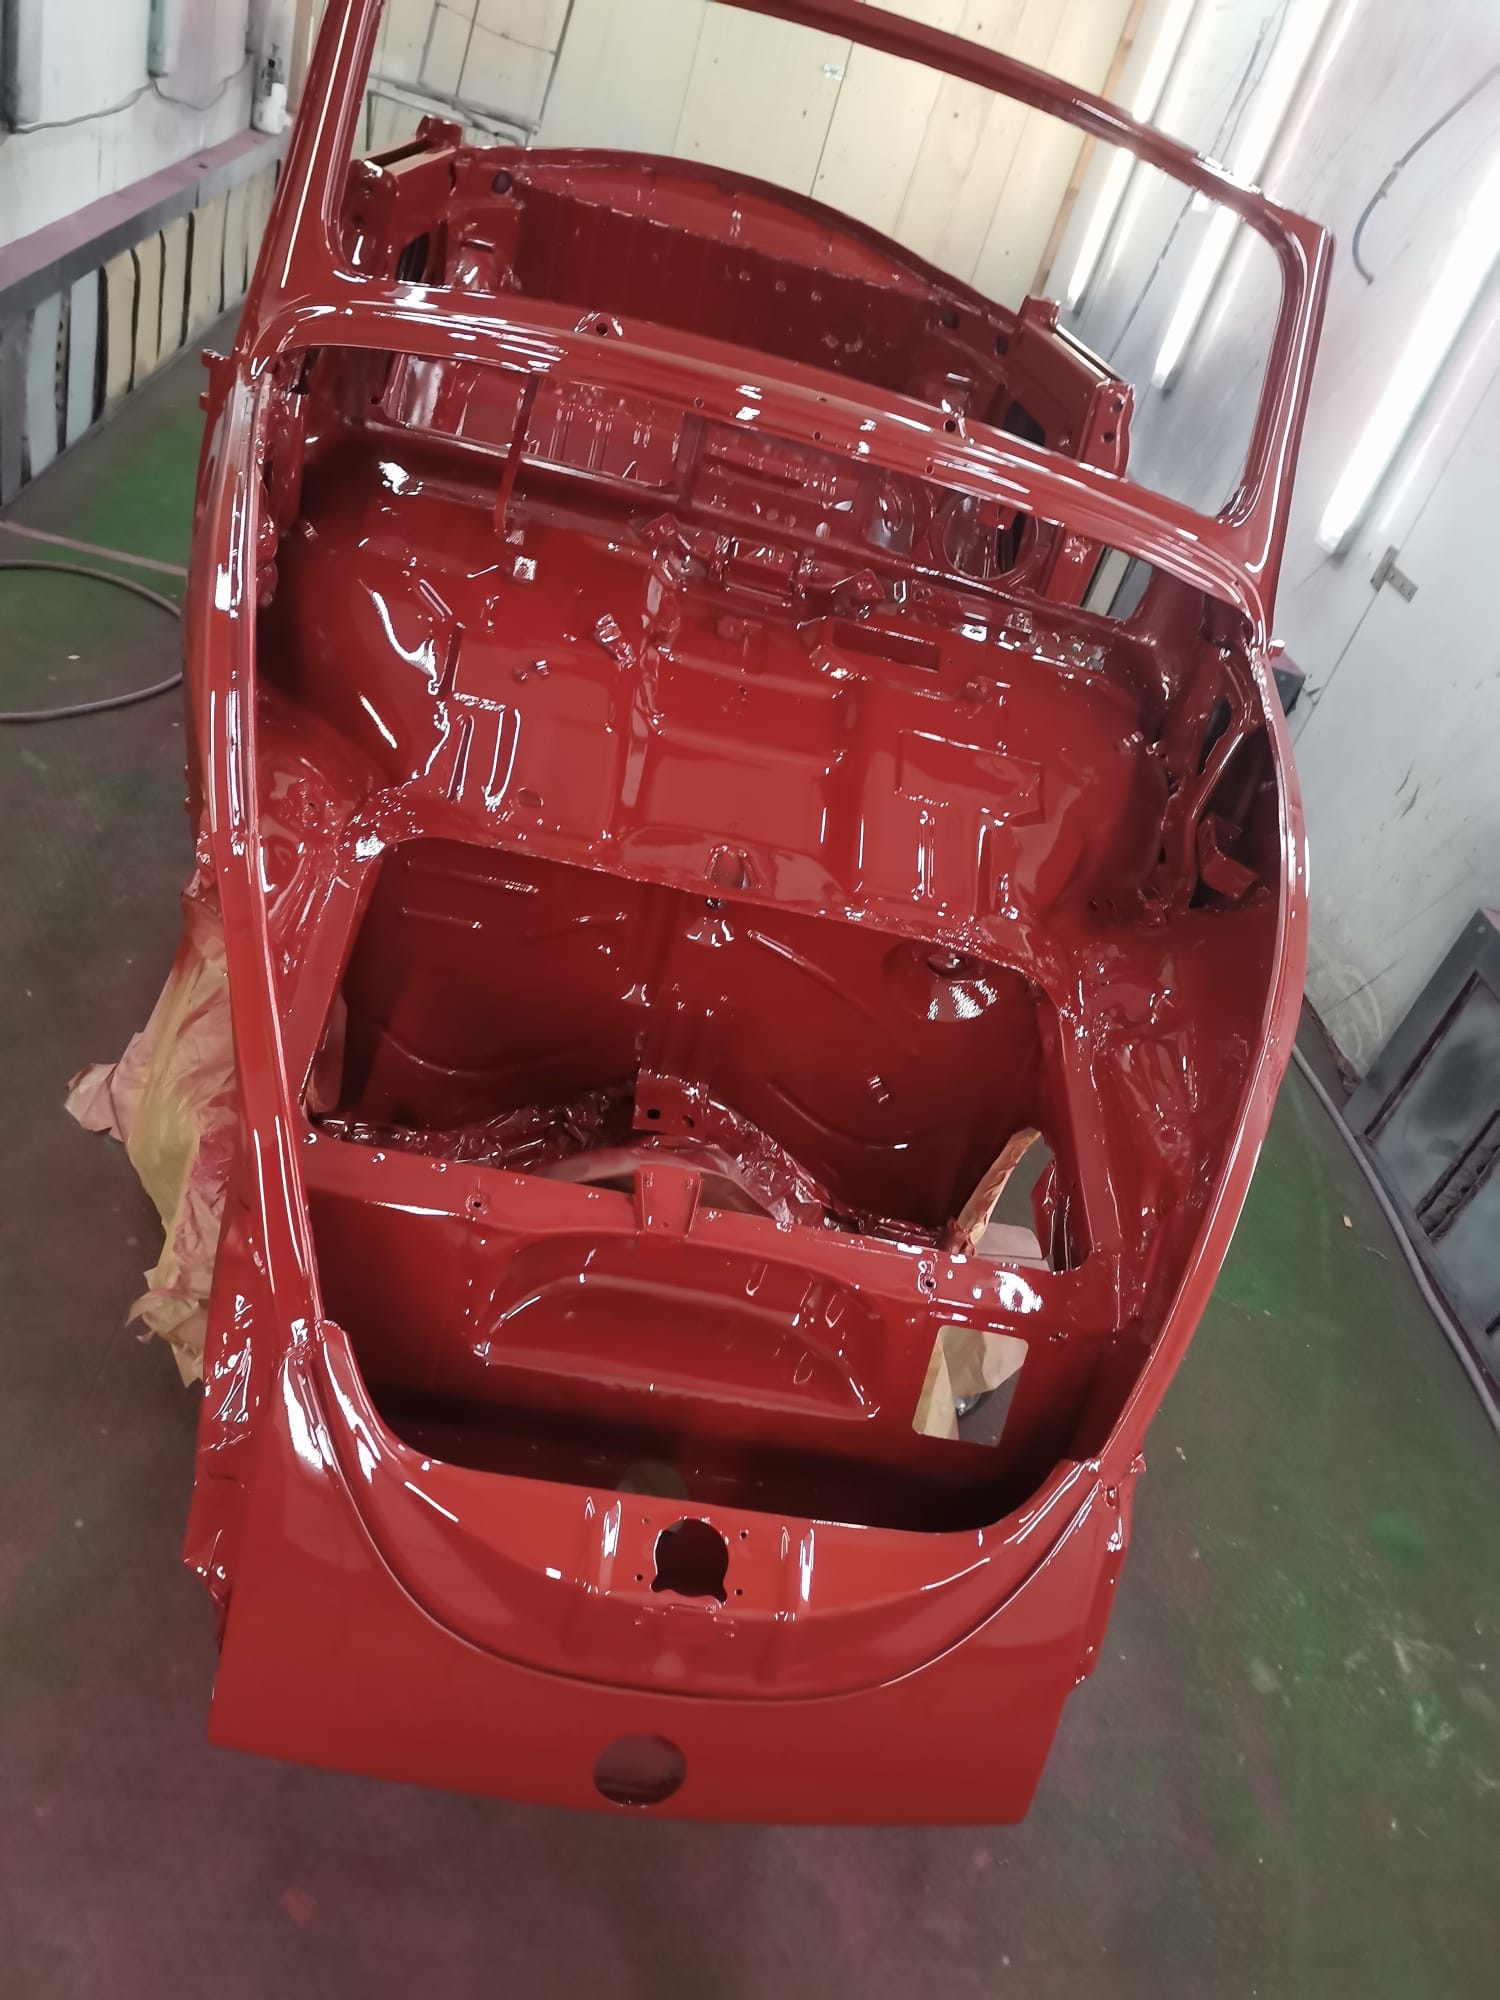 restauration restaurierung vw volkswagen käfer cabrio lackierung häuschen